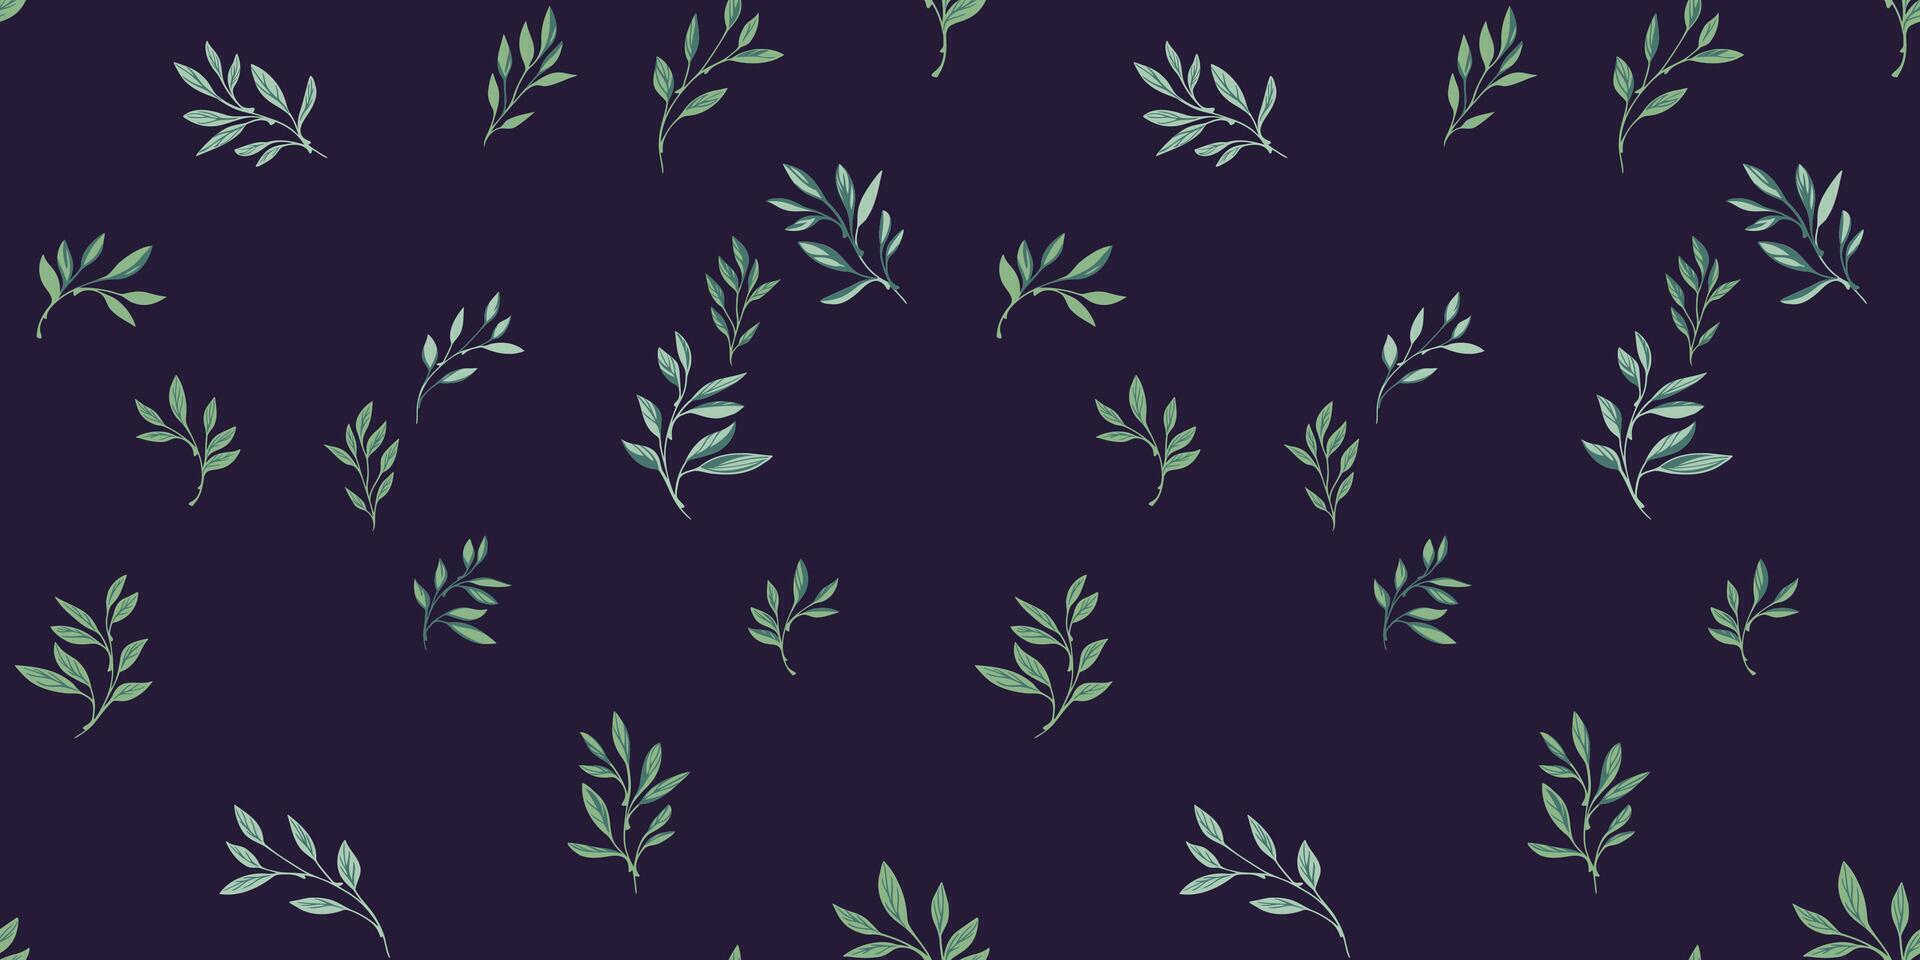 sömlös mönster med grön abstrakt mycket liten löv grenar spridd slumpvis på en mörk svart bakgrund. vektor hand dragen skiss. collage minimalistisk enkel botanisk printing.template för design